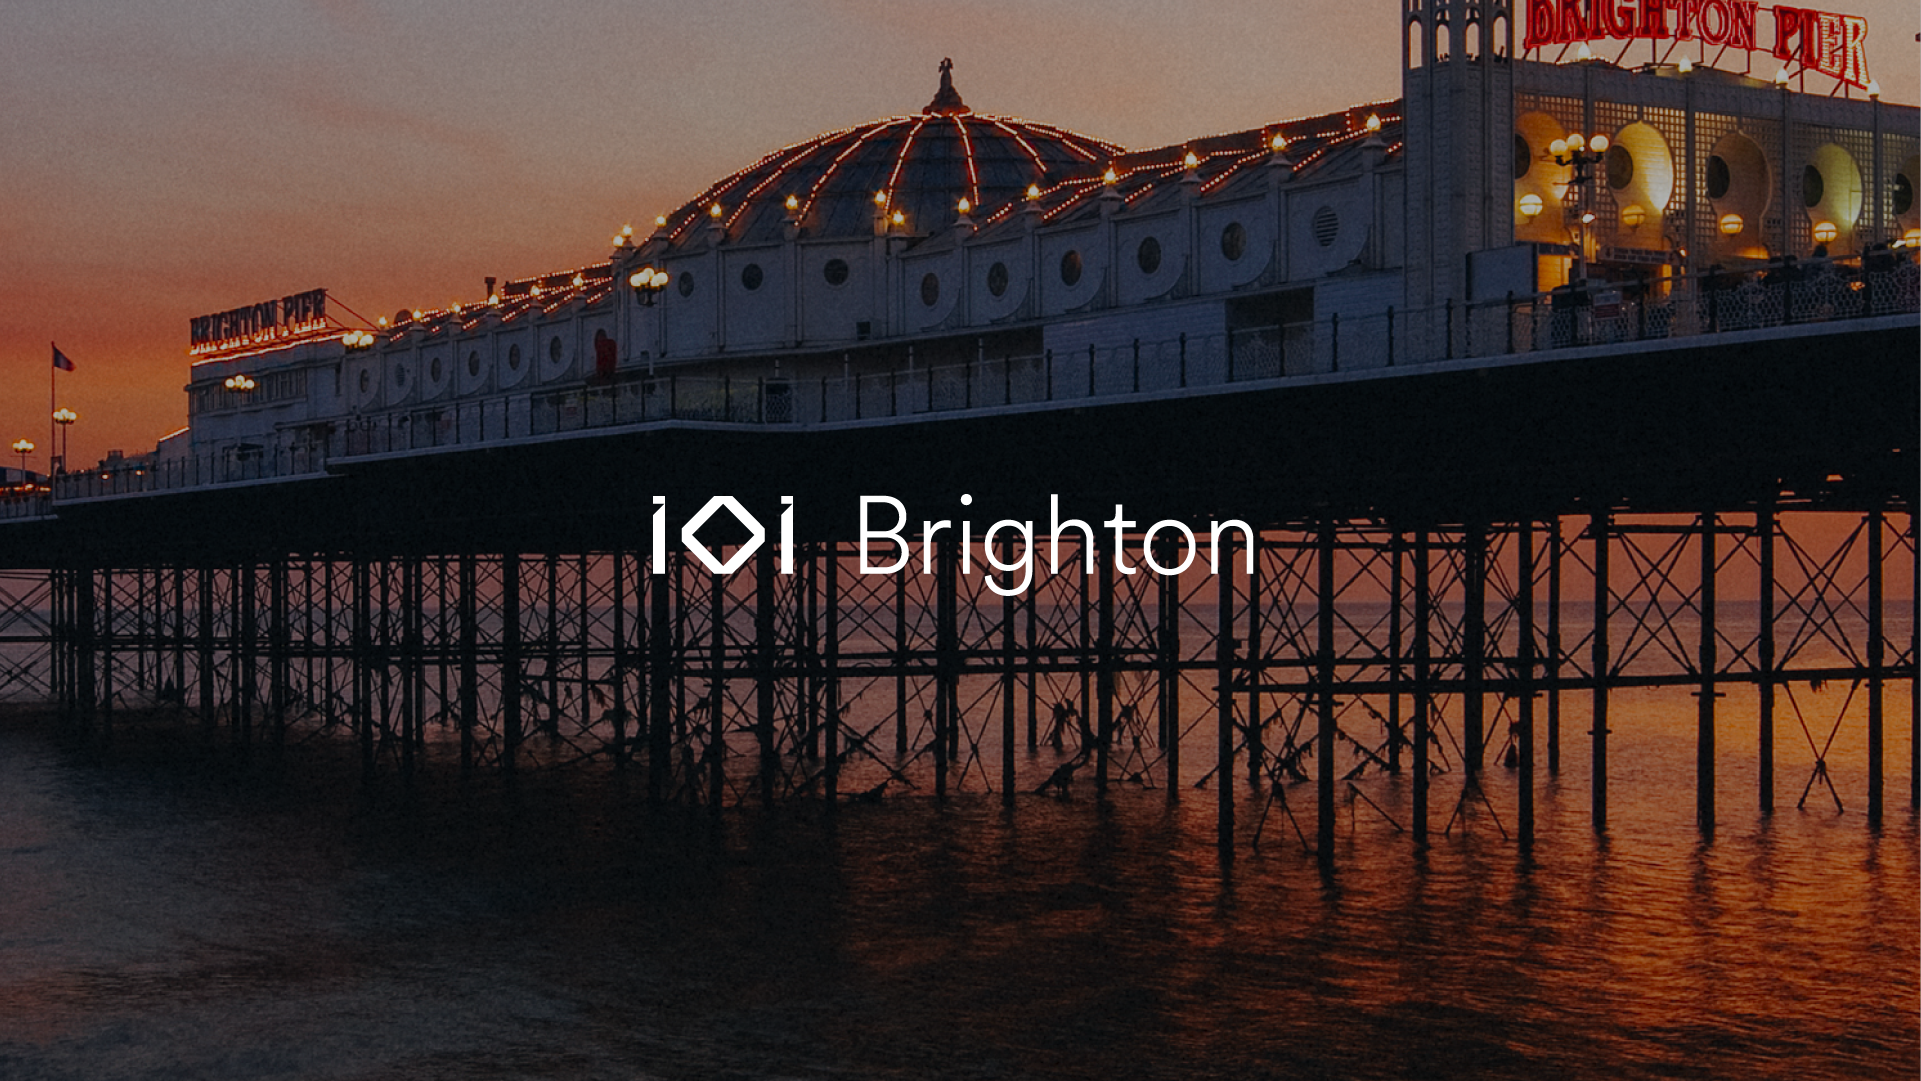 Hitman-ontwikkelaar IO Interactive opent nieuwe studio in Brighton, Verenigd Koninkrijk